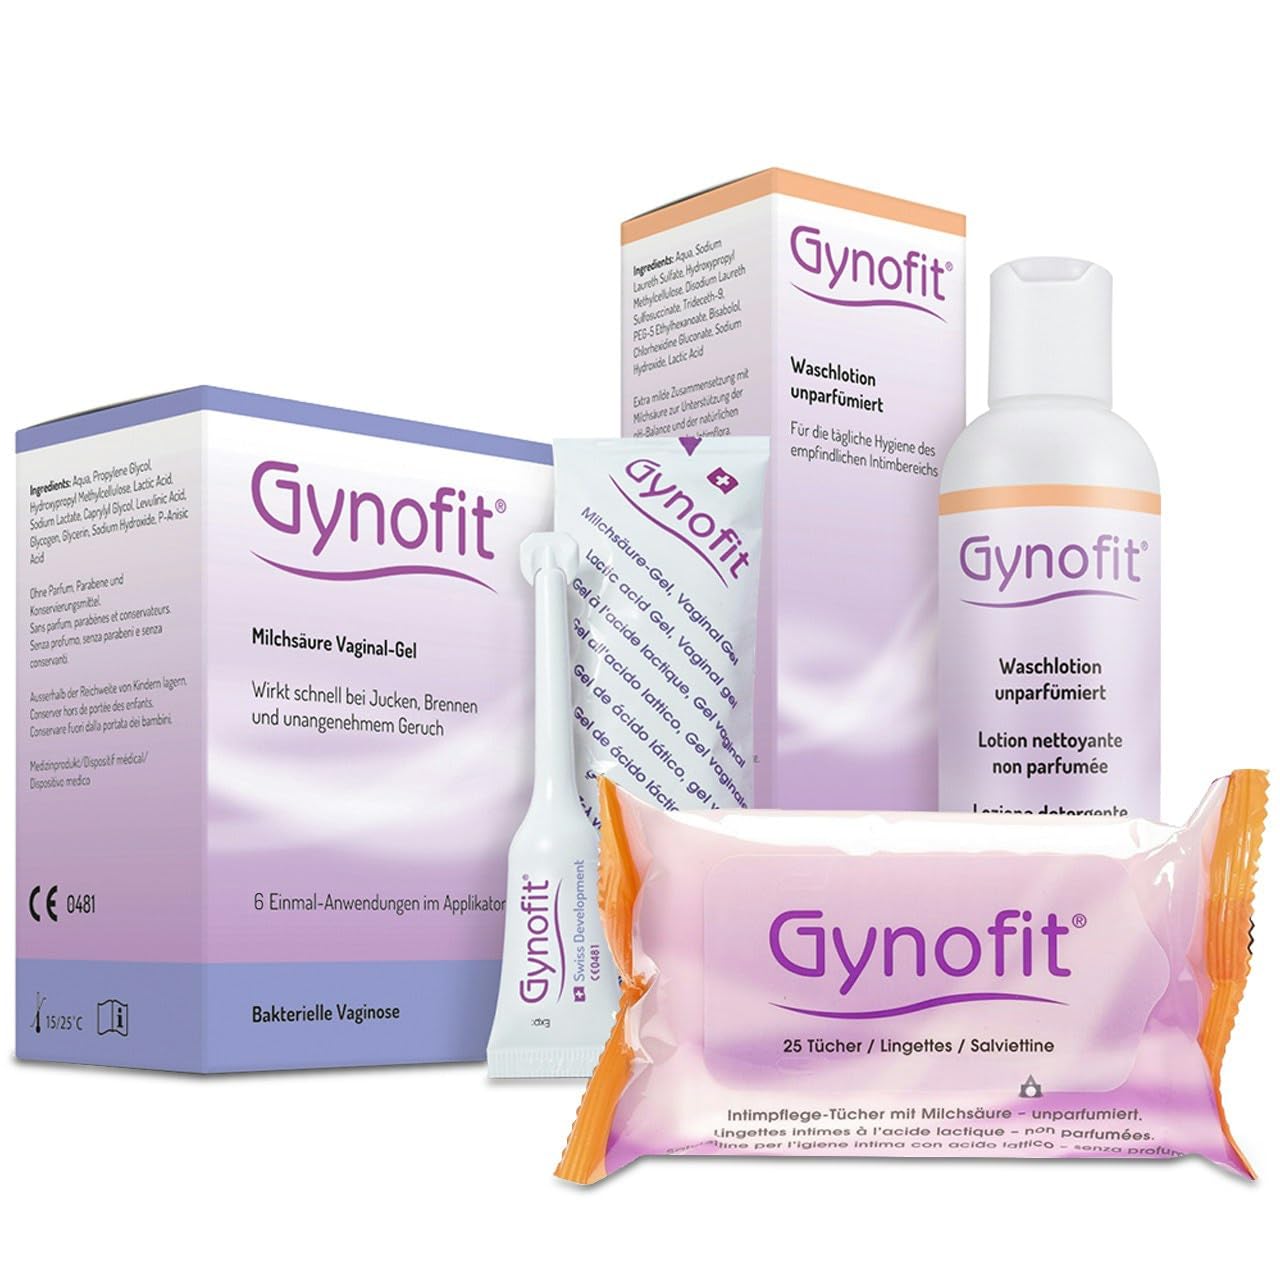 Gynofit Intimpflege Sparset (6x5ml/25 Stk./200ml) - Das komplettset für perfekte Intimhygeiene mit attraktivem Preisvorteil